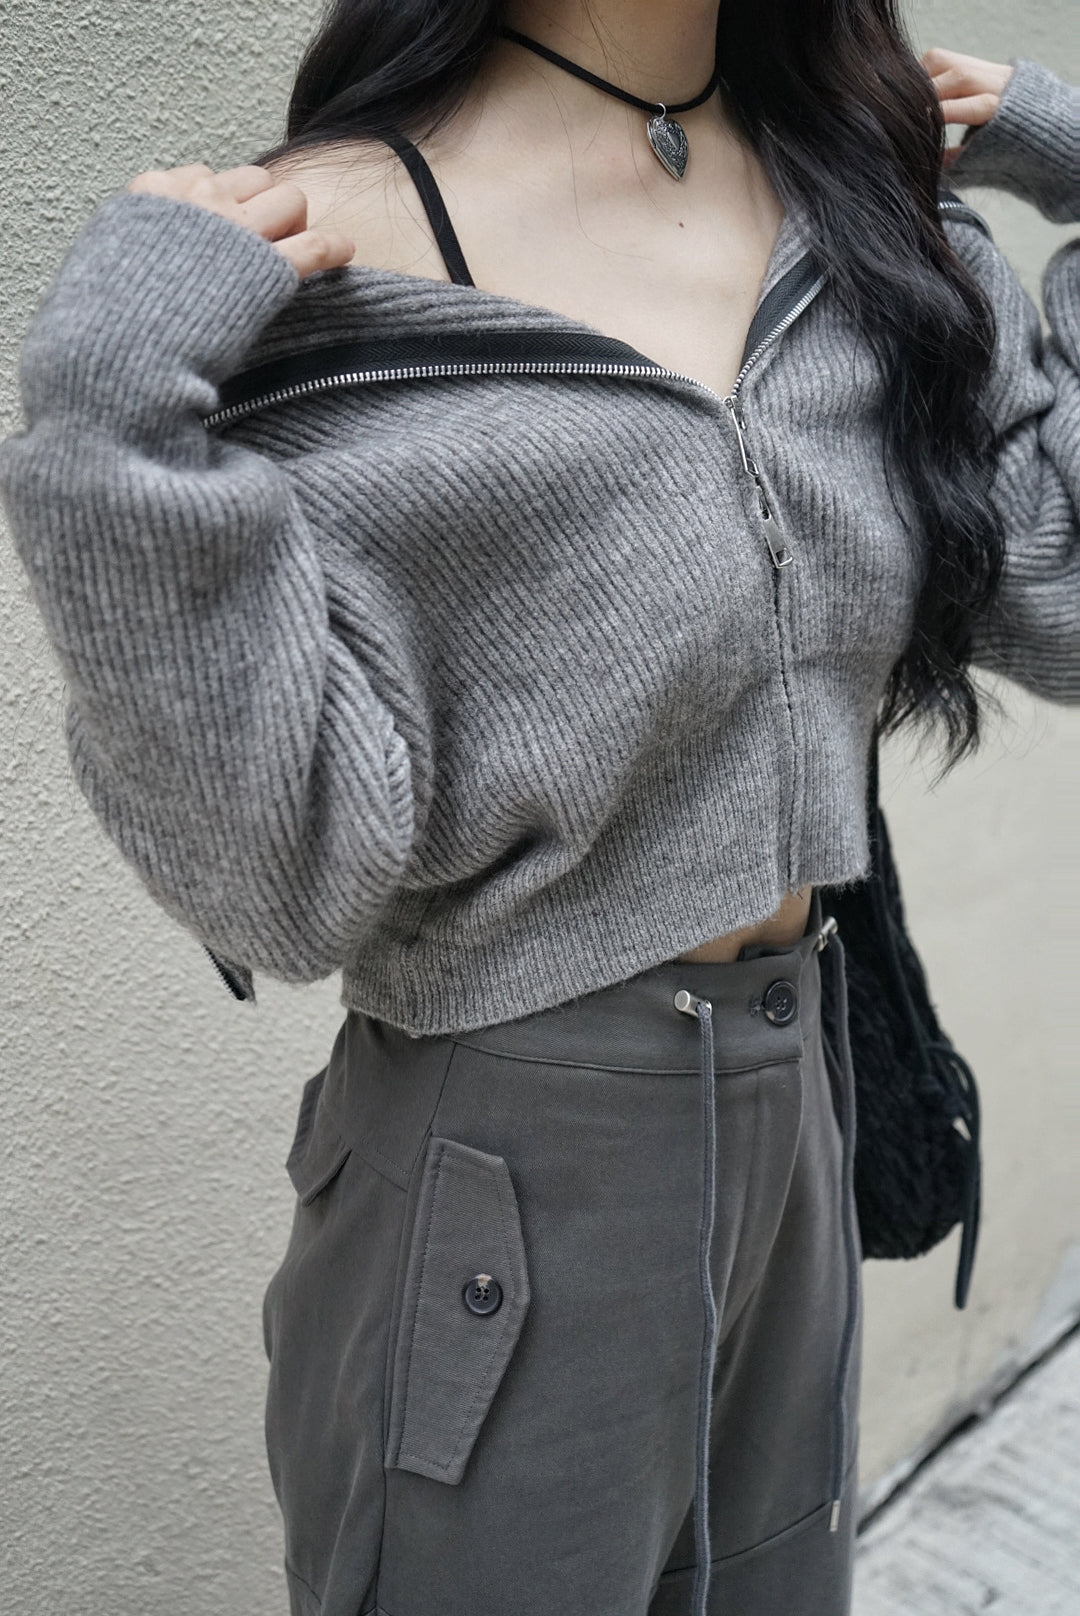 Knit Zip Up Top / Grey